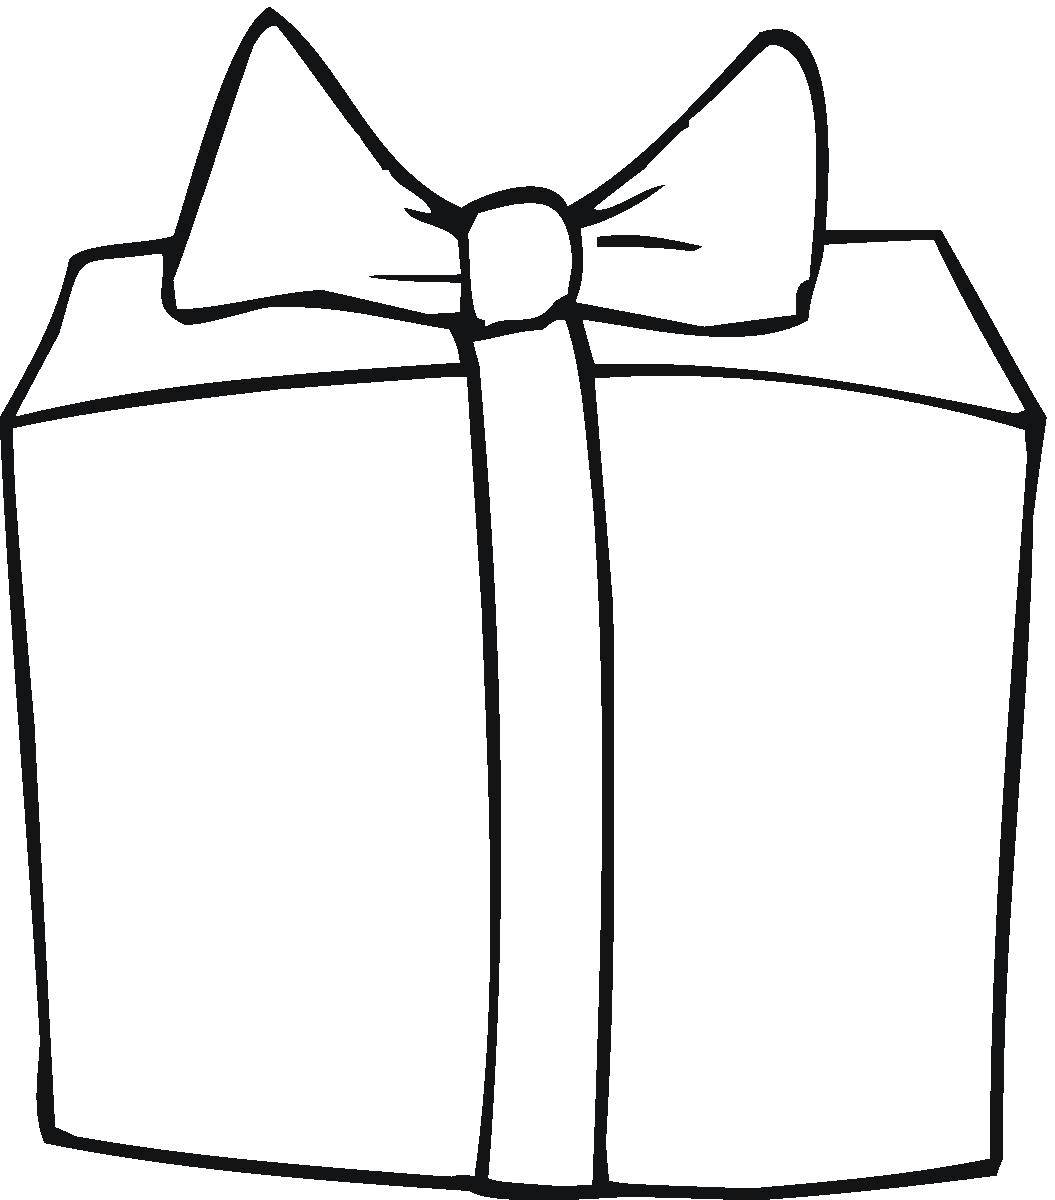 Название: Раскраска Упаковка подарка. Категория: раскраски. Теги: Подарки, праздник.